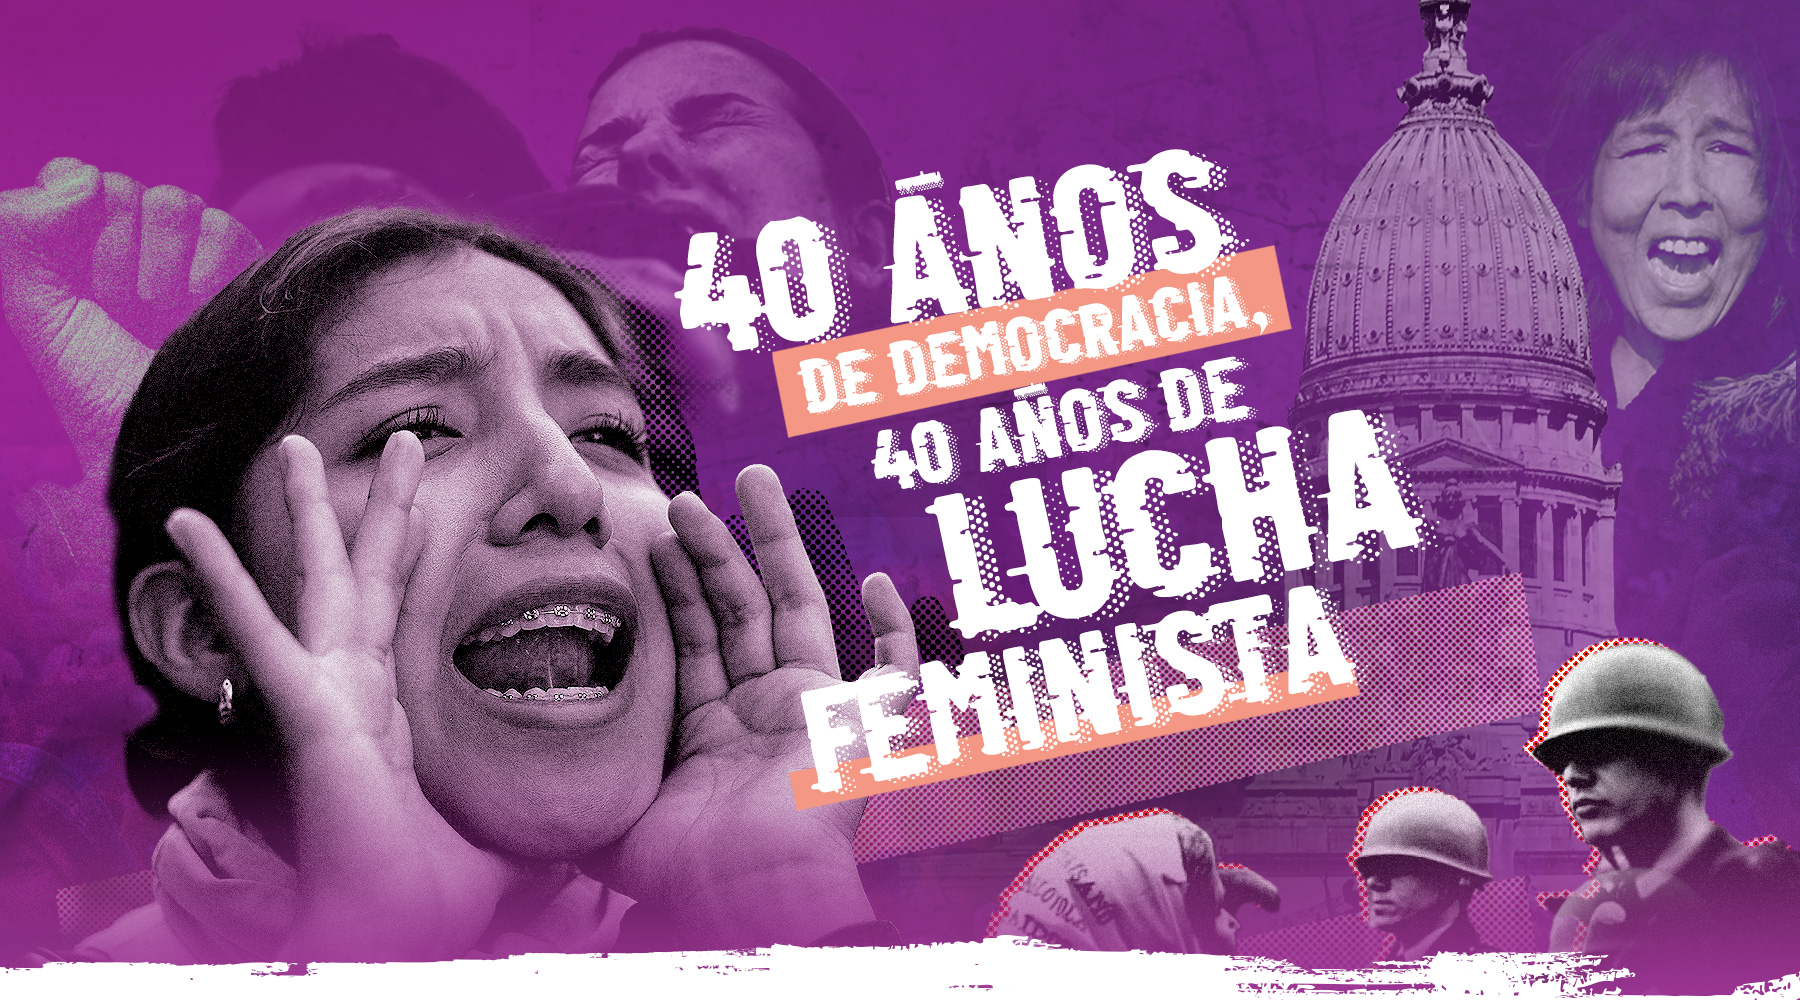 40 años de democracia, 40 años de lucha feminista